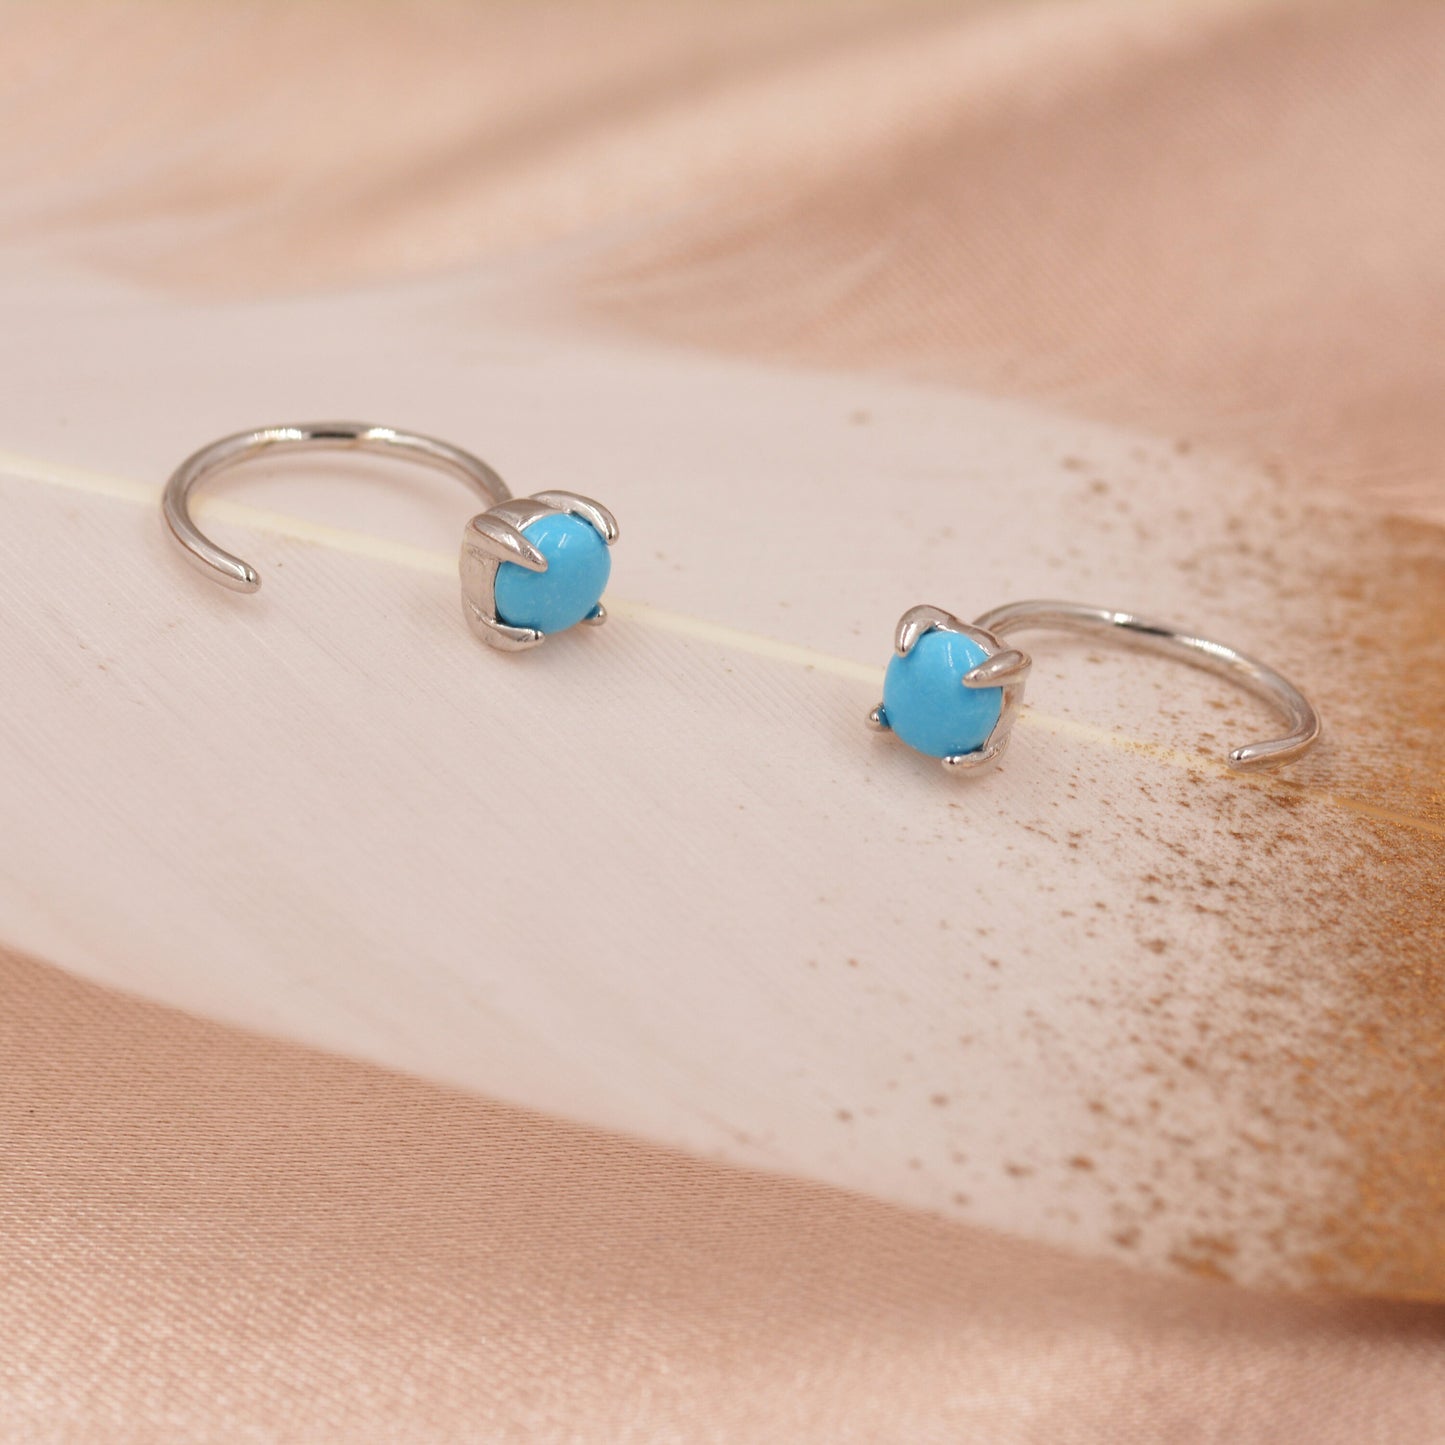 Genuine Turquoise Threader Hoop Earrings in Sterling Silver, Turquoise Dot Open Hoop Earrings, Huggie Hoop,  Pull Through